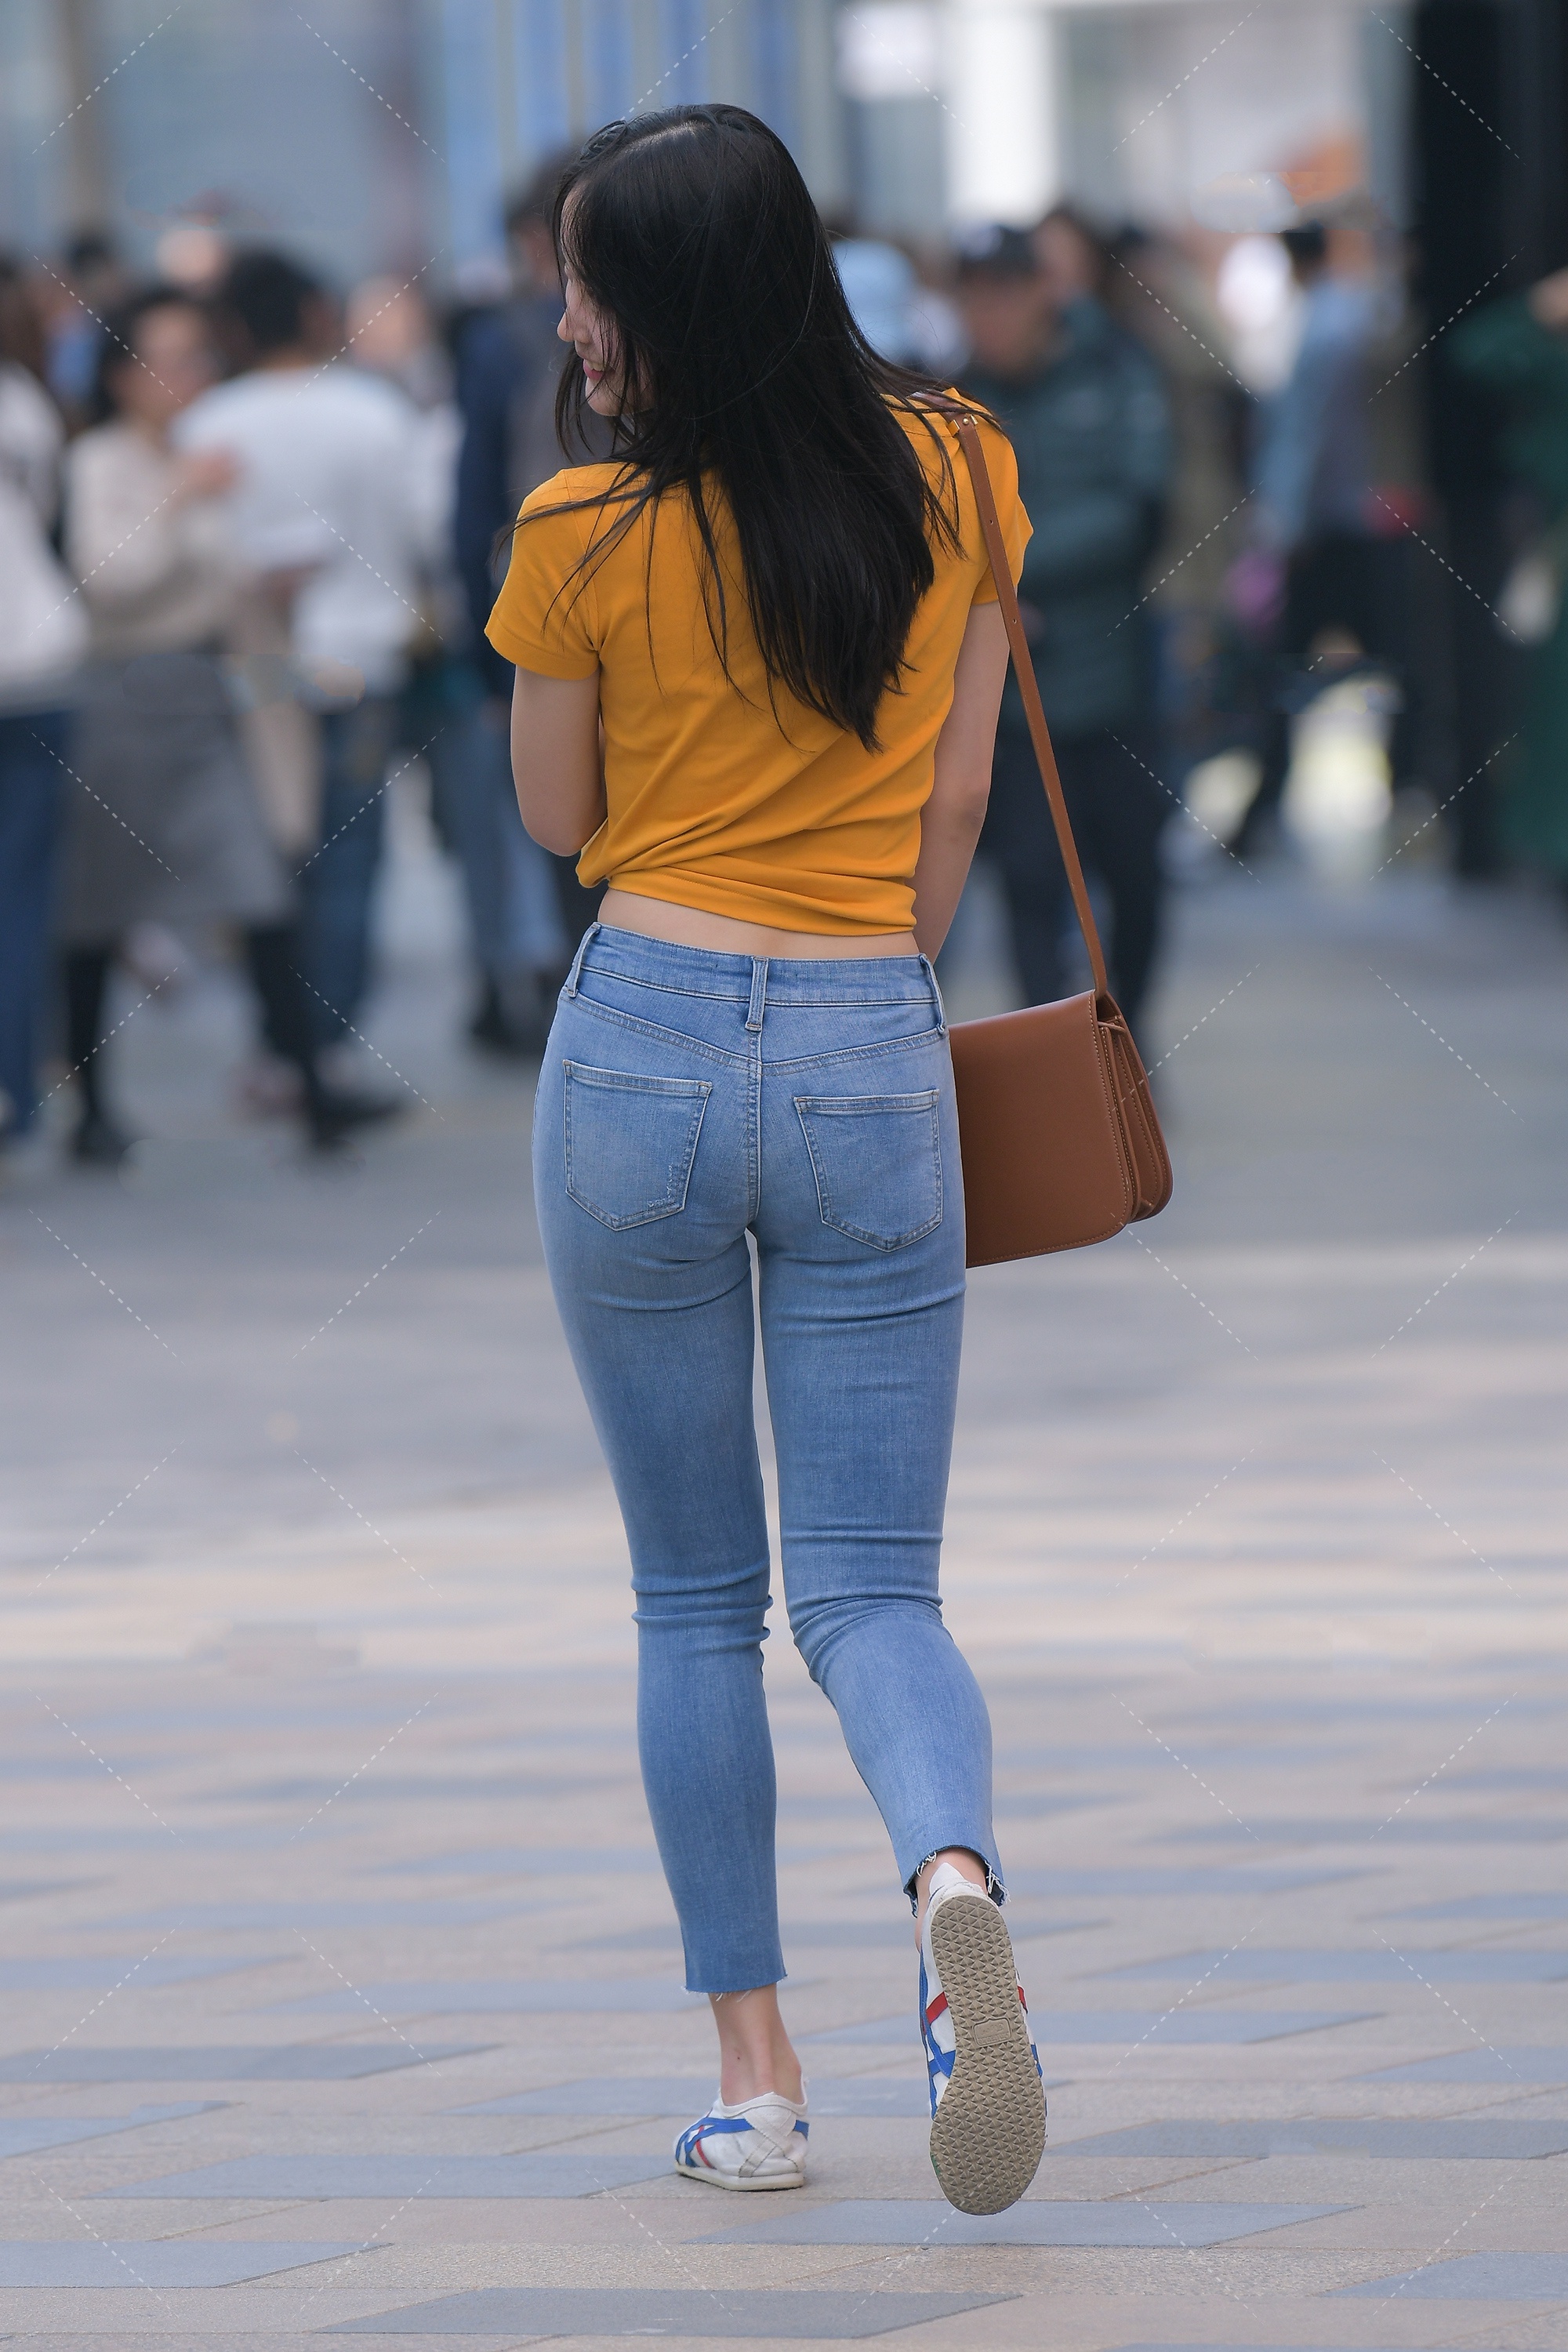 原创橘黄色修身短t搭配浅色牛仔裤,青春活泼,满满的校园风